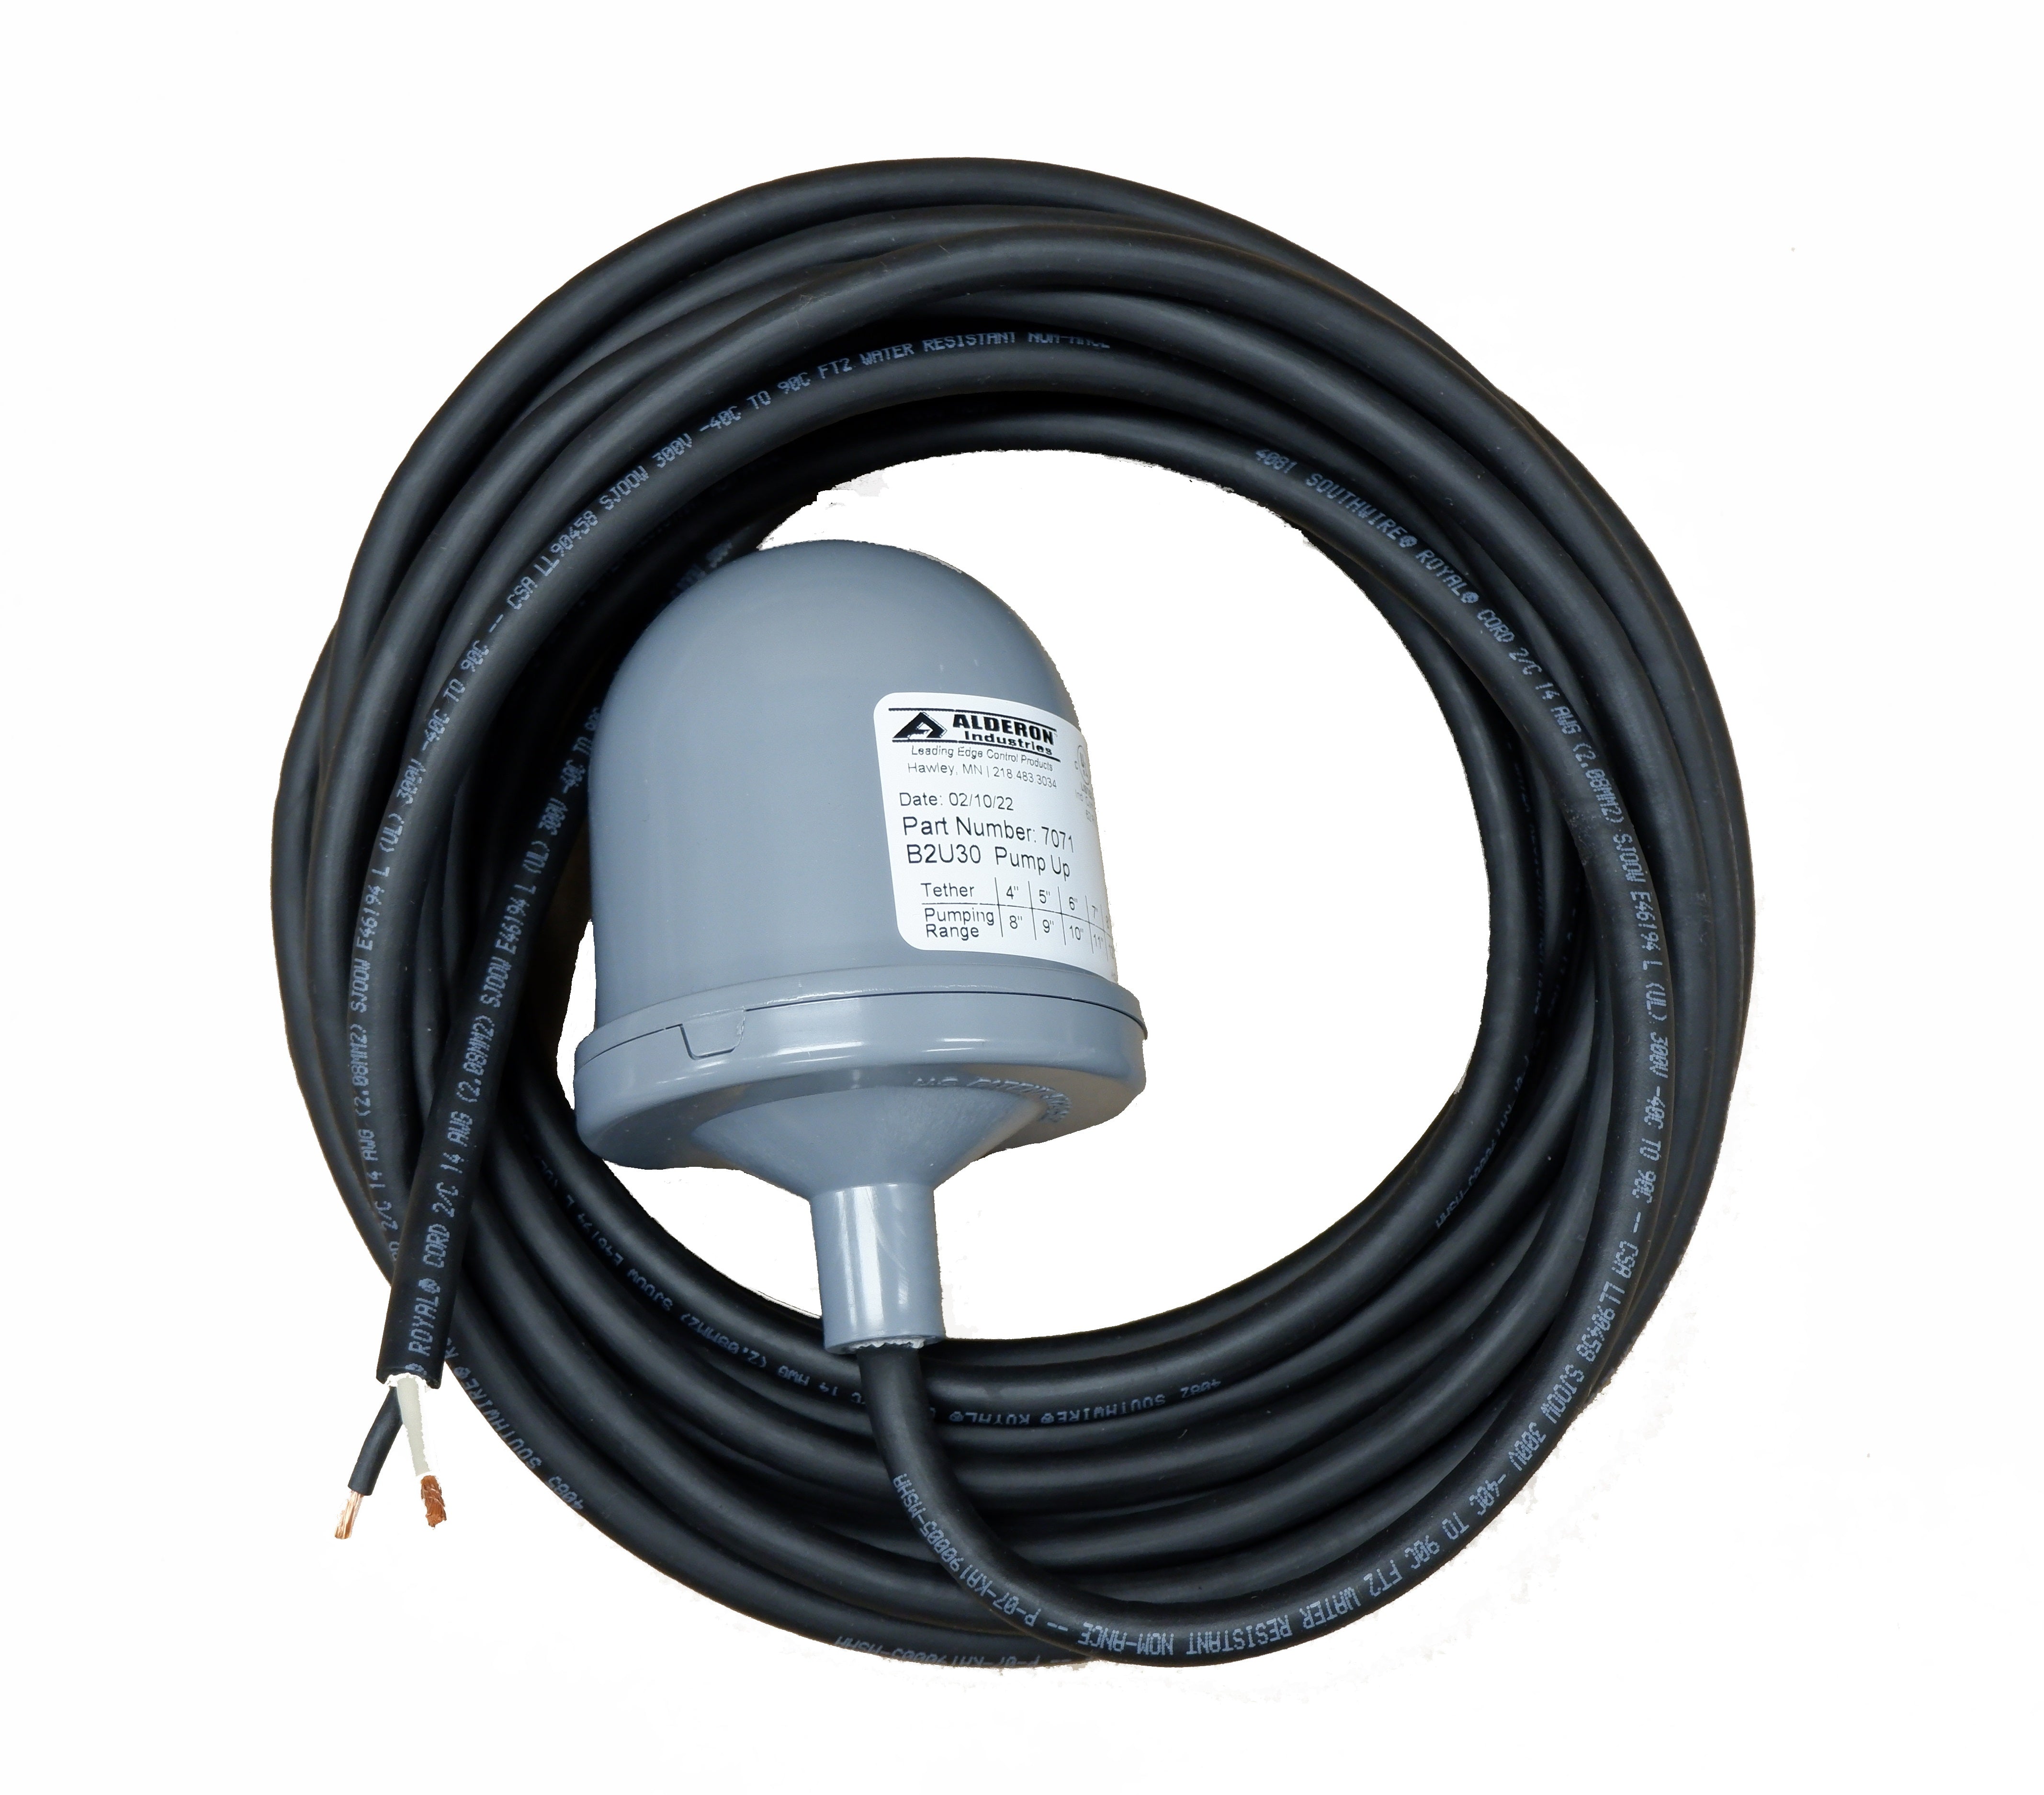 Alderon Altra 120/230V 3 wire Wide Angle Bare Leads Pump Switch